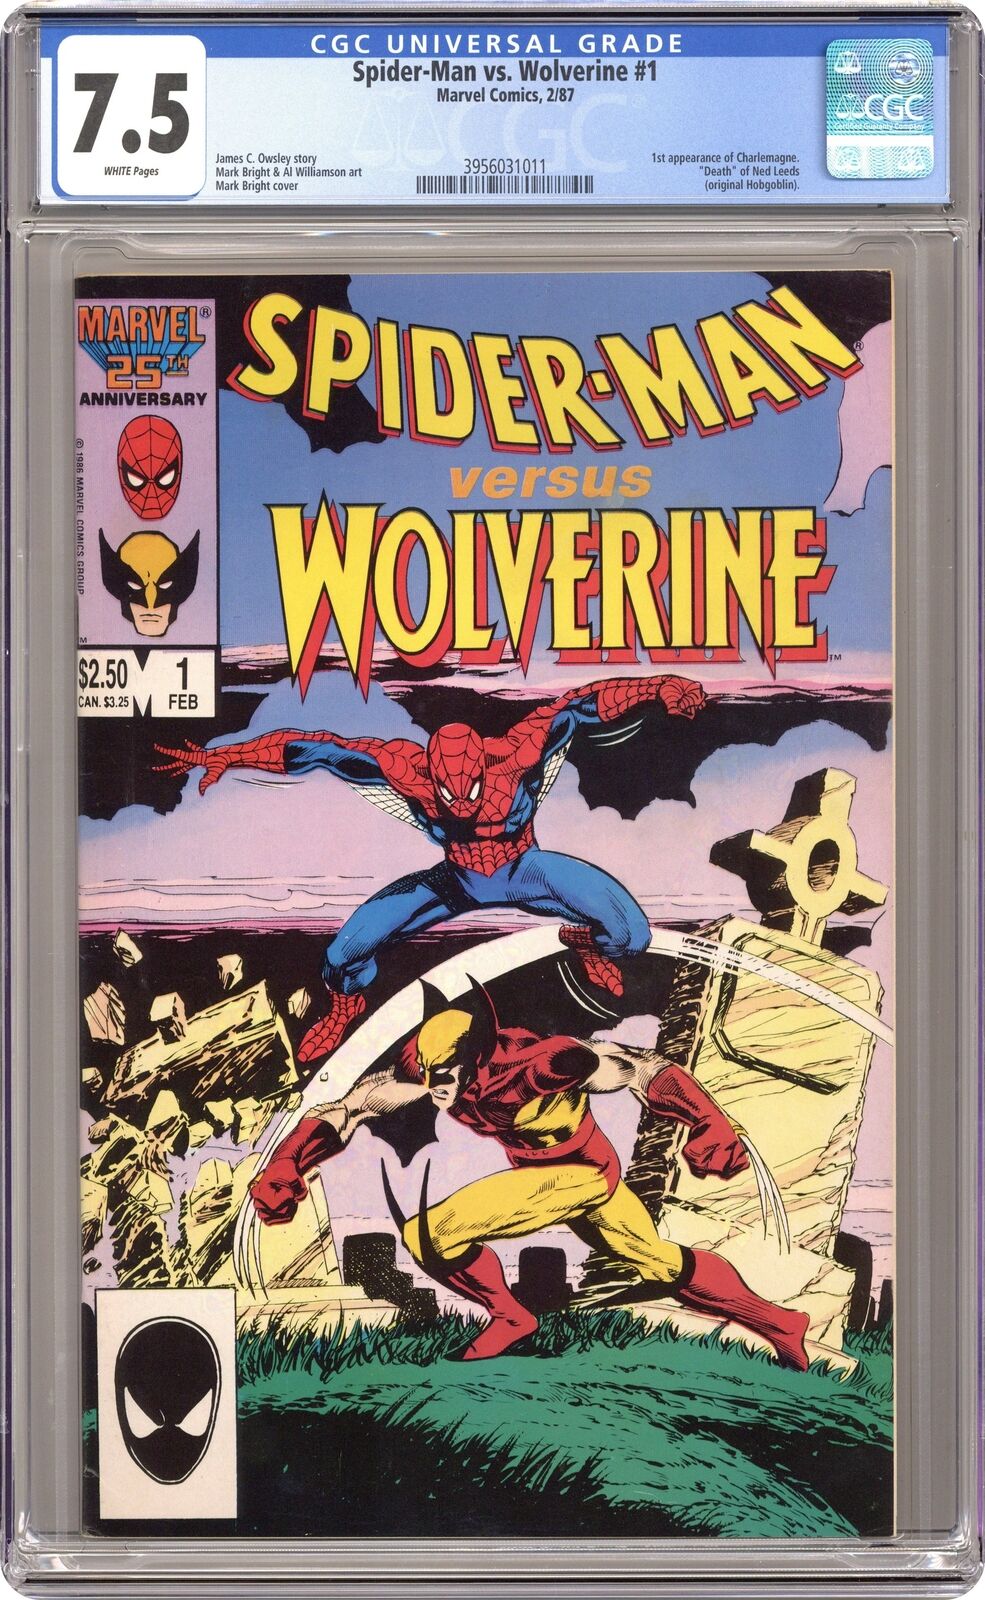 Spider-Man vs. Wolverine 1st Edition #1 CGC 7.5 1987 3956031011